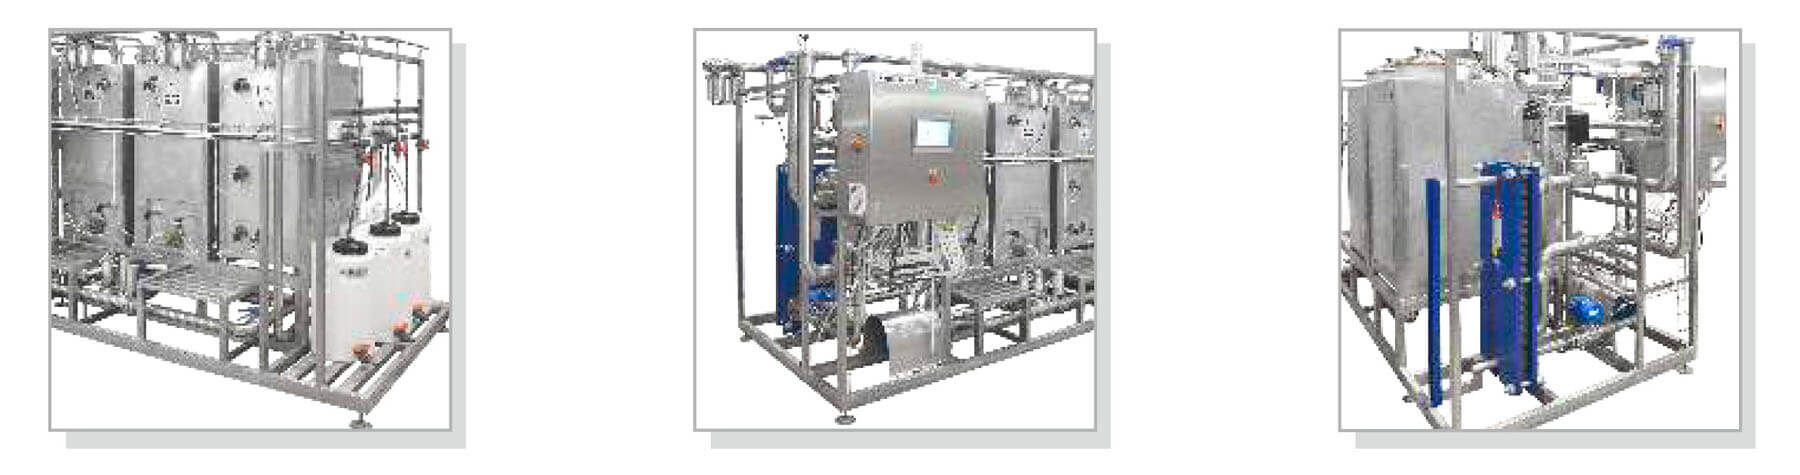 Оборудование для установки для внутренней санитарной мойки серии «cip-модуль лм-10»